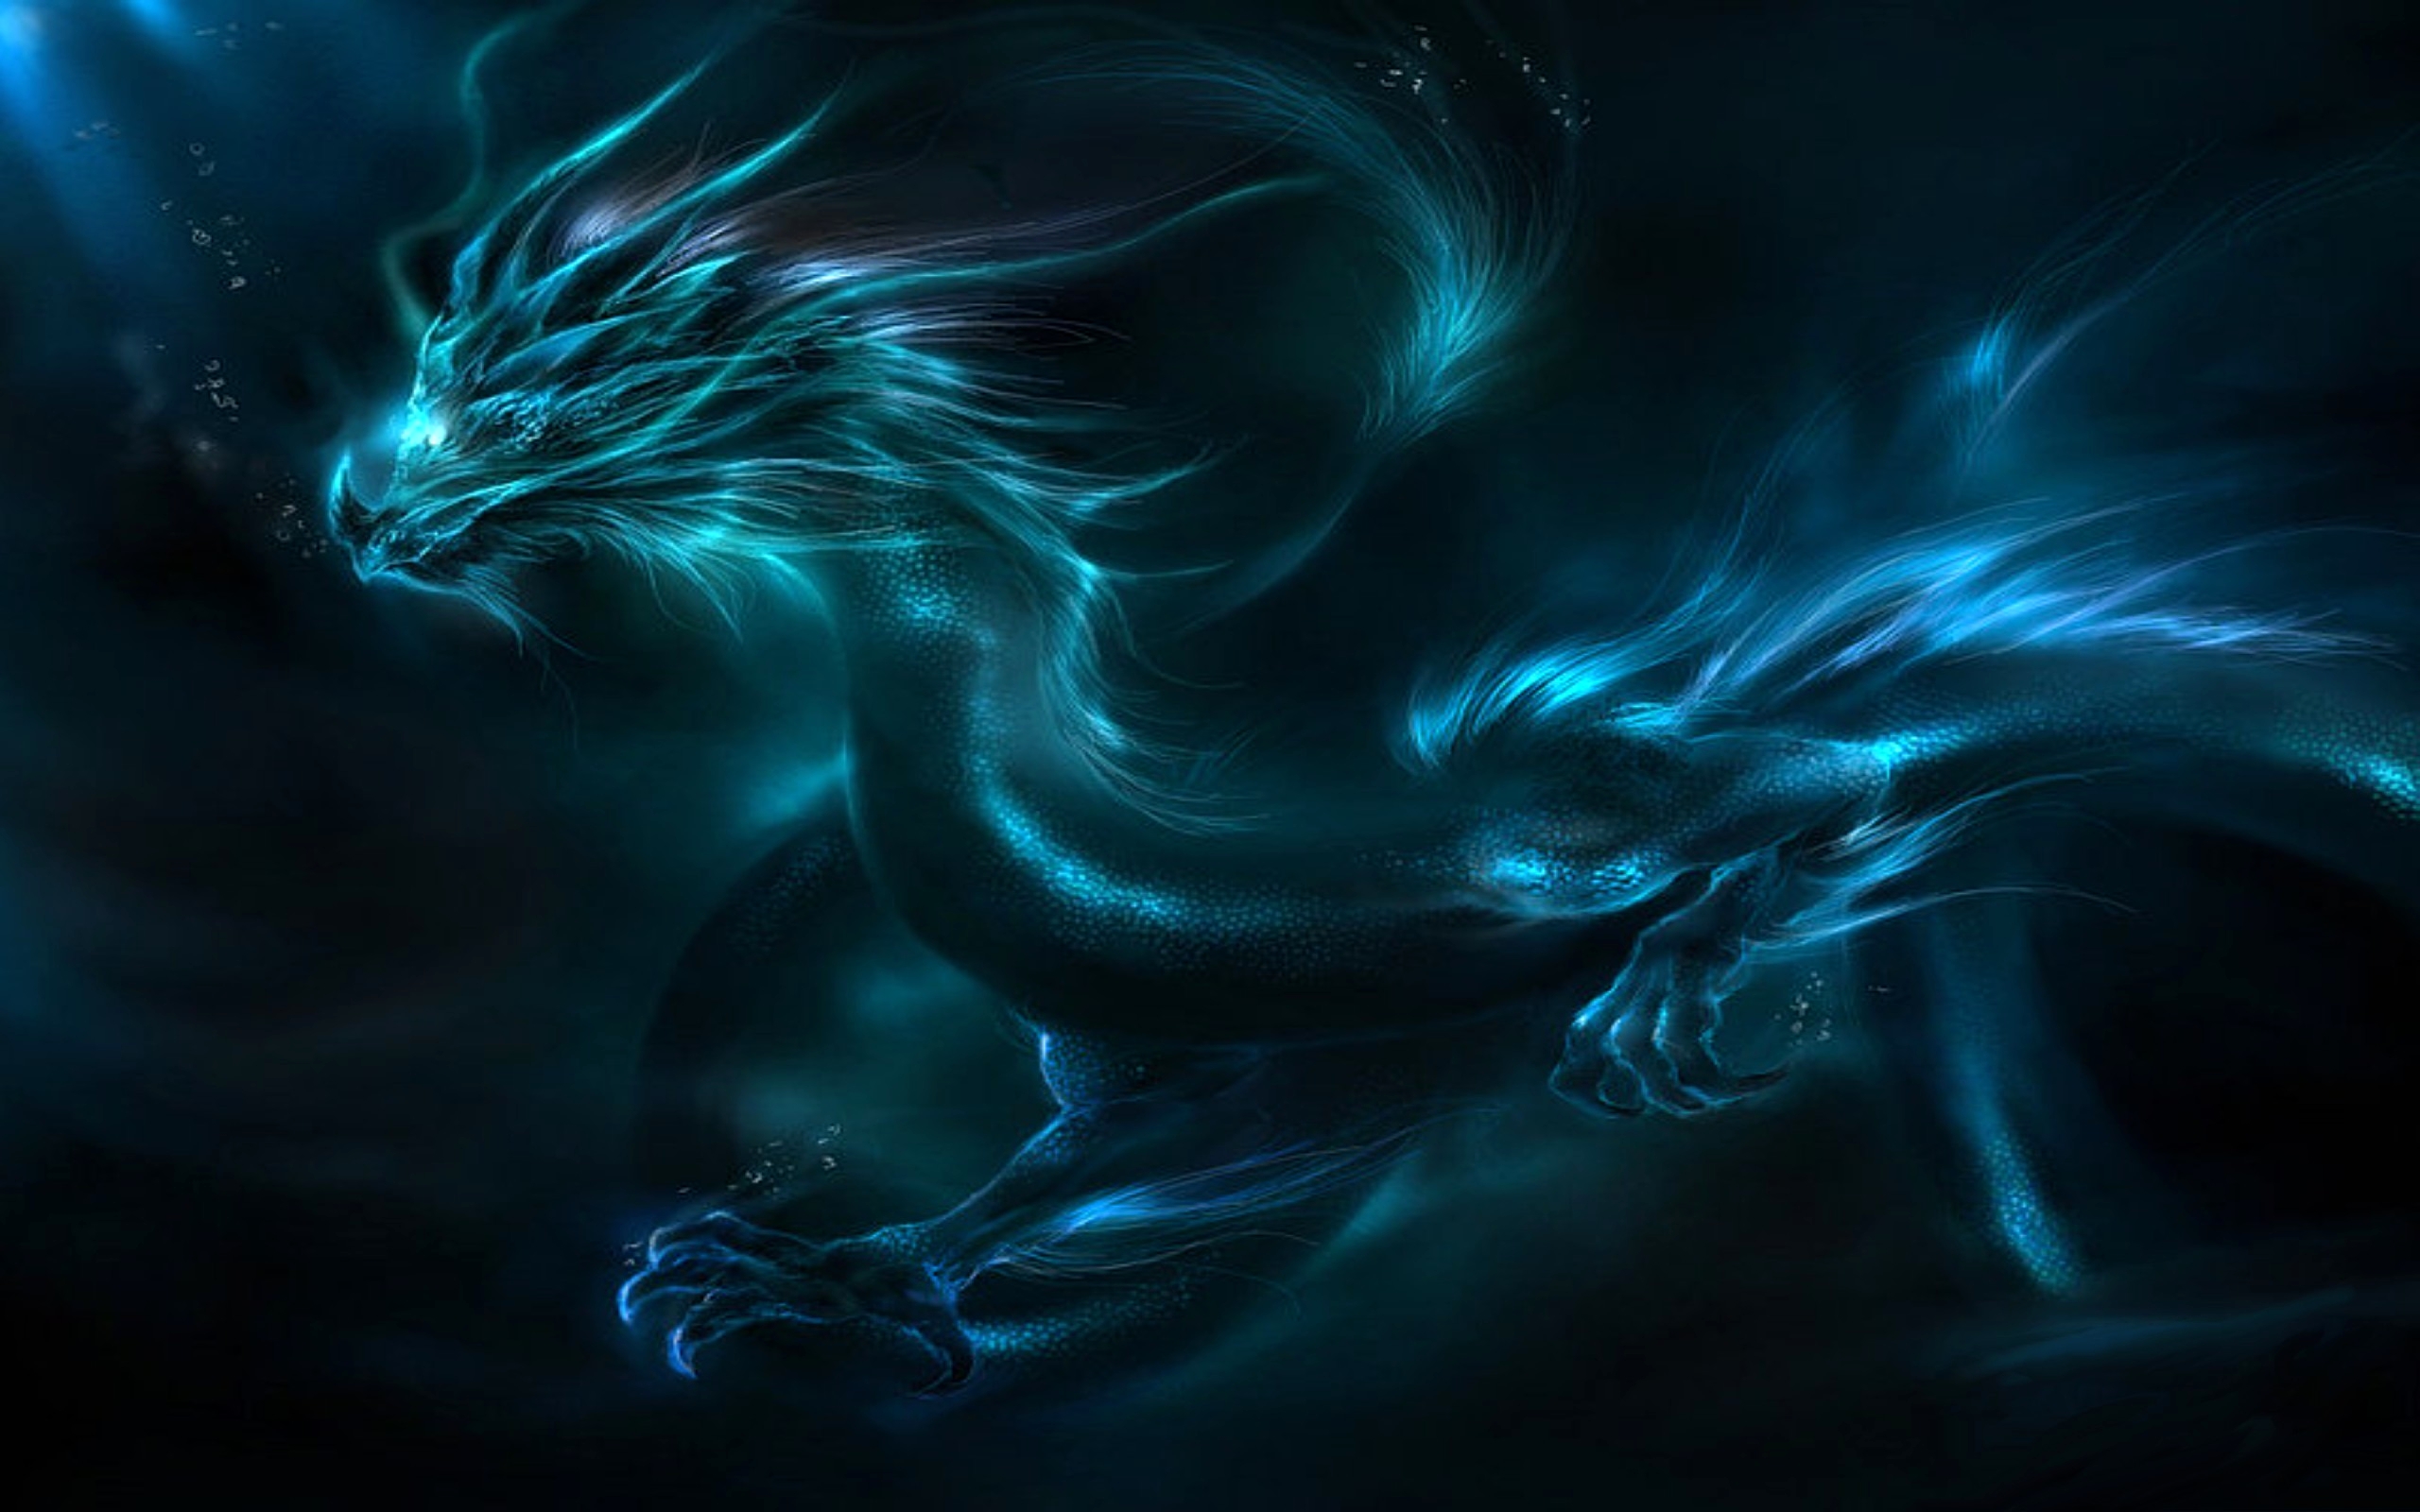 Hình nền Rồng ảo màu xanh miễn phí - (Free download blue fantasy dragon Wallpaper Background 26700) Còn gì tuyệt vời hơn khi được sở hữu một hình nền Rồng ảo màu xanh thật đẹp mắt và miễn phí để tải về thiết bị của bạn. Hình nền Rồng ảo màu xanh không chỉ giúp cho thiết bị của bạn trở nên cá tính và độc đáo hơn, mà còn là nguồn cảm hứng và năng lượng mới để bắt đầu một ngày mới đầy tràn đầy năng lượng.